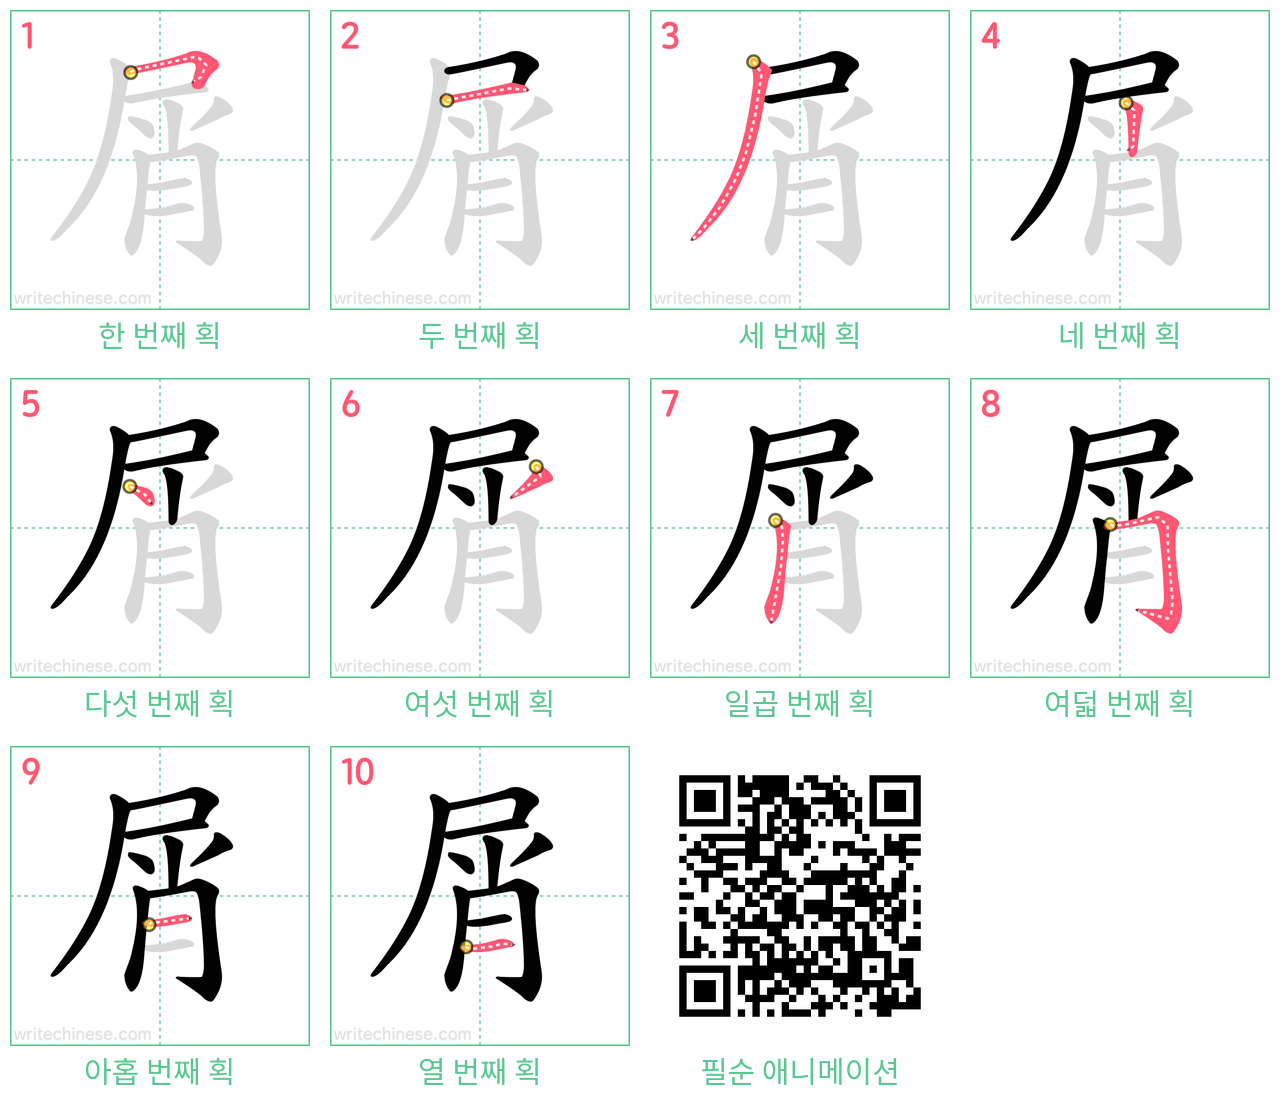 屑 step-by-step stroke order diagrams